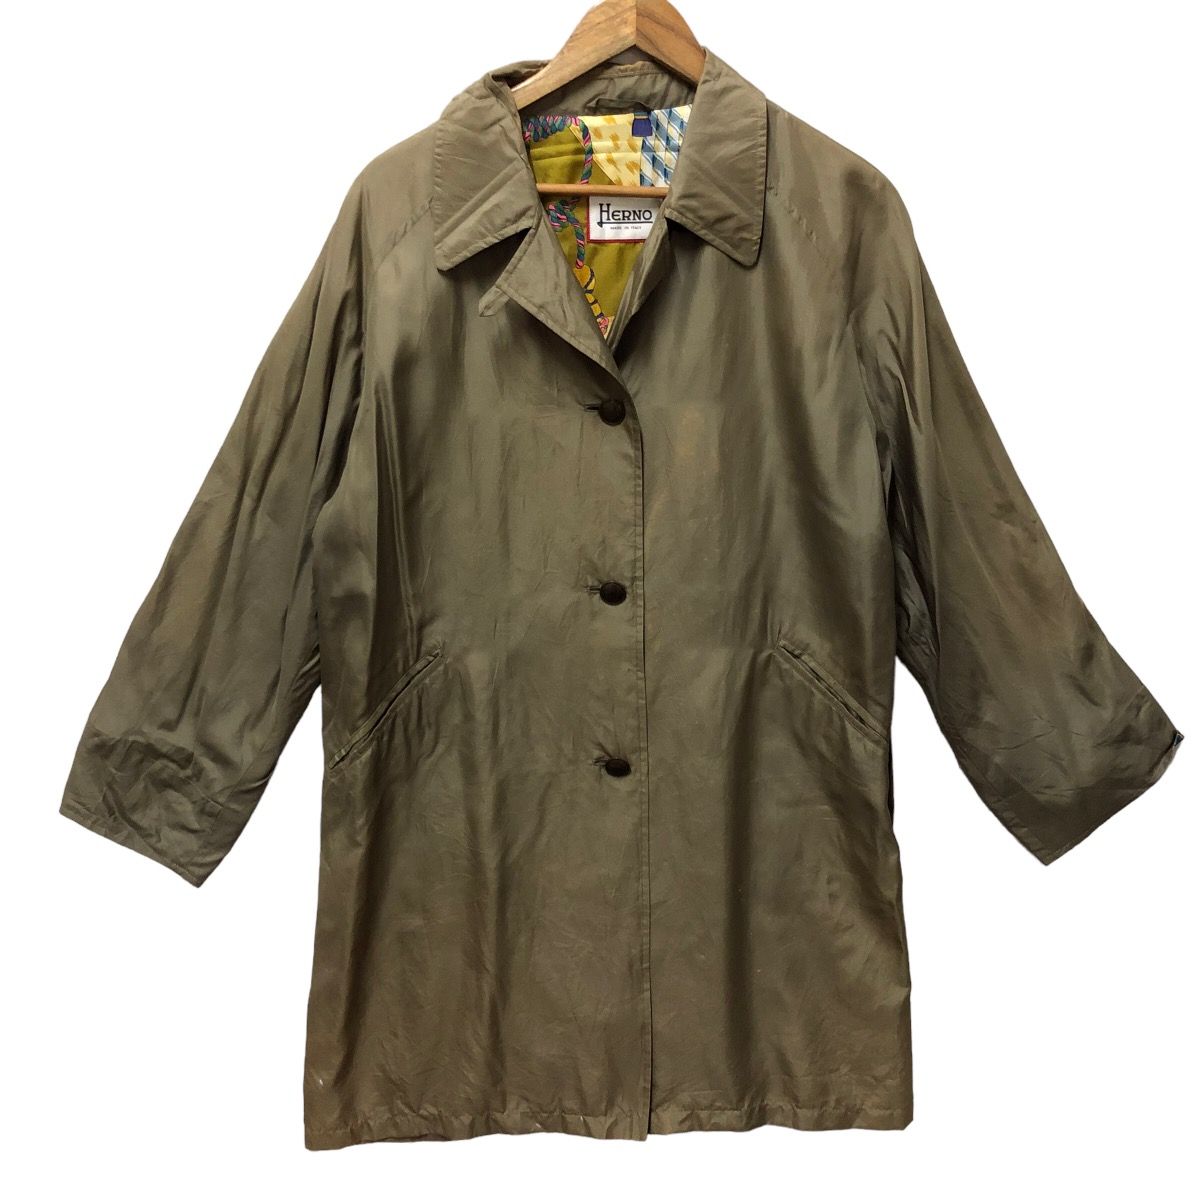 Vintage italian silk jacket - 1